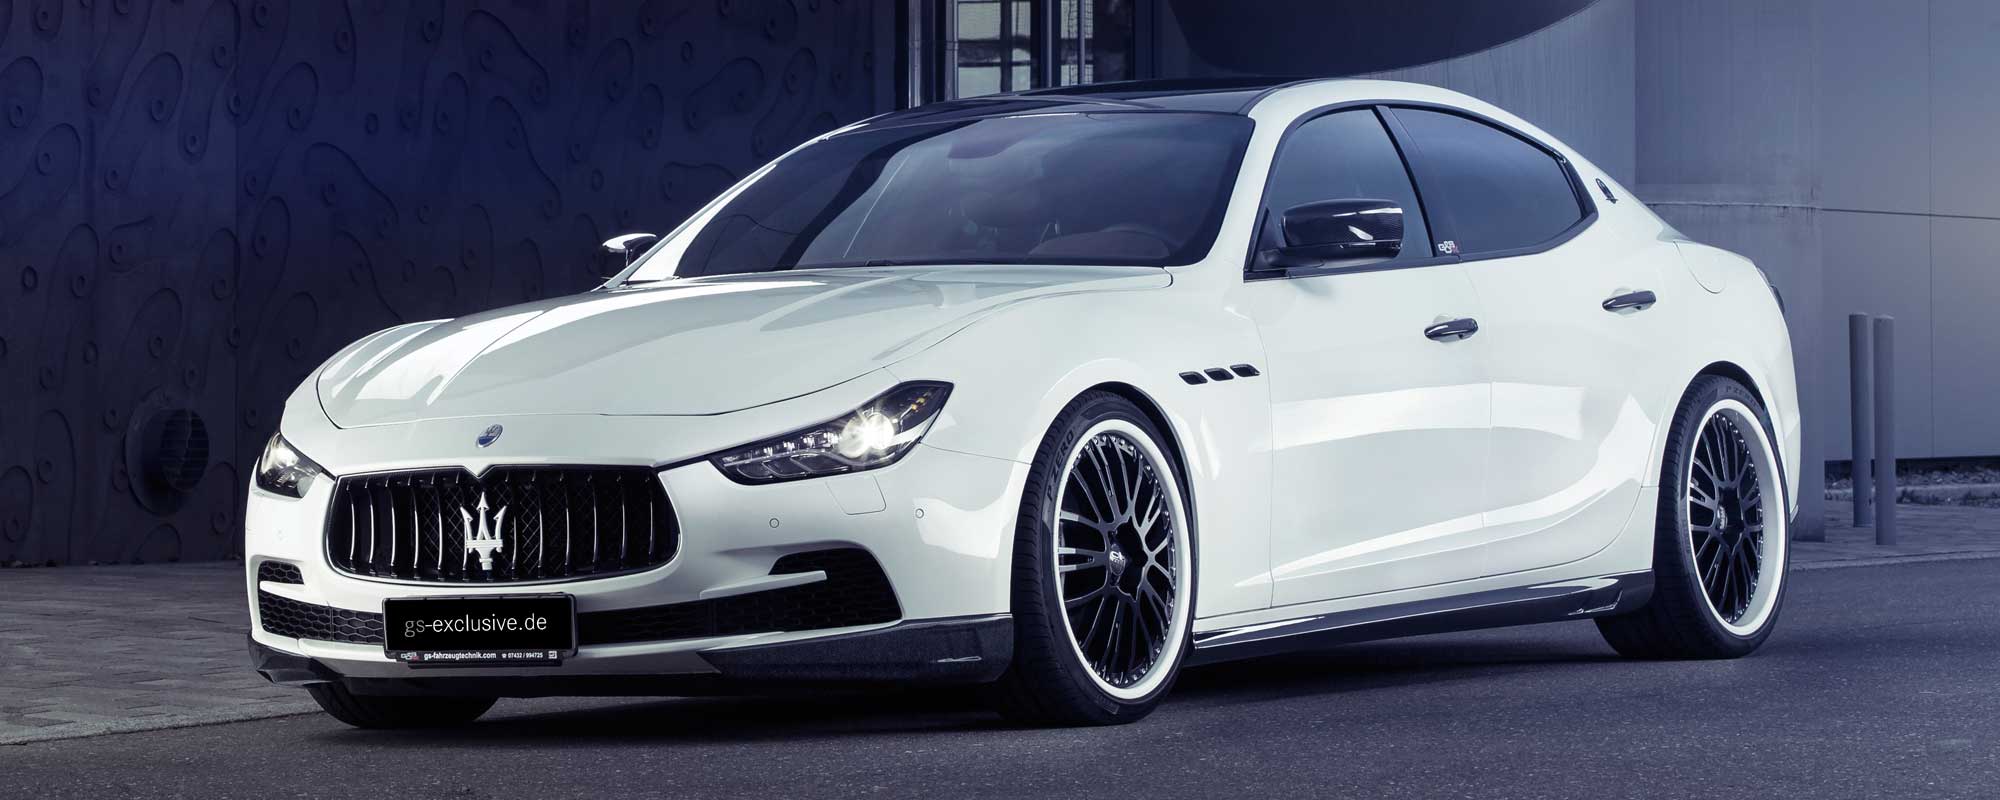 Der Maserati Ghibli von G&S Exclusive